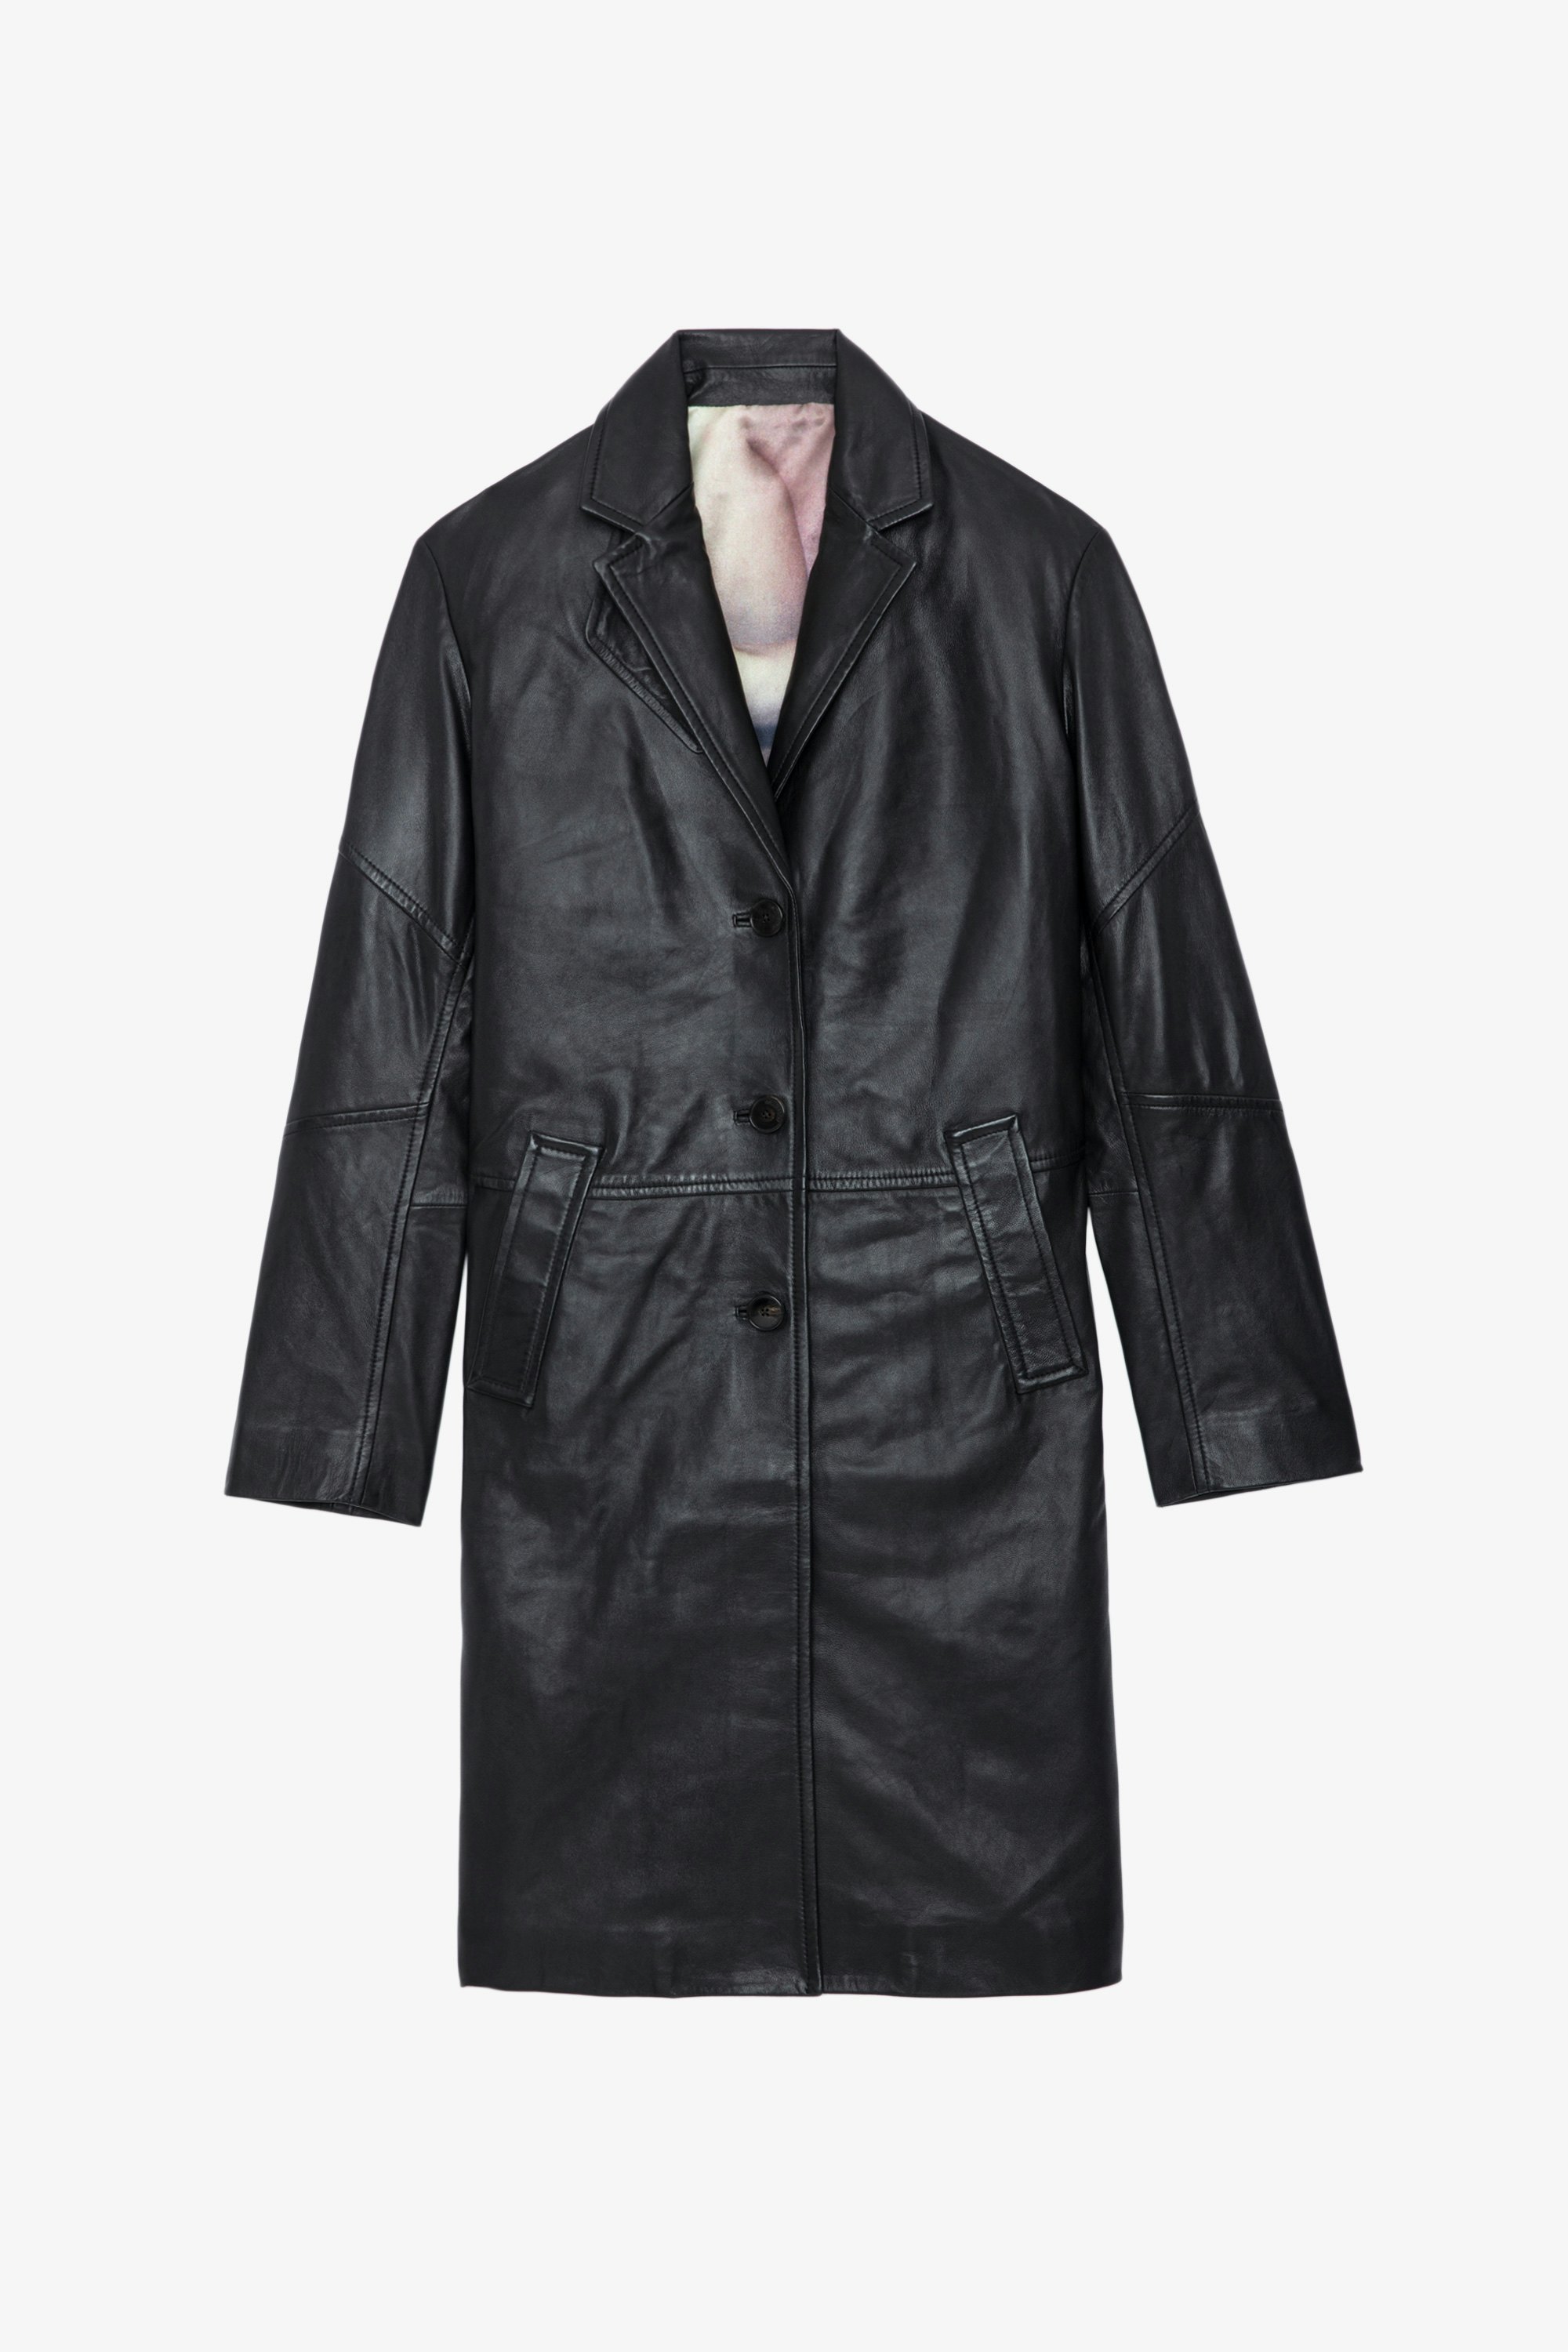 Cappotto Macari Pelle - Cappotto lungo con bottoni in pelle liscia nera.